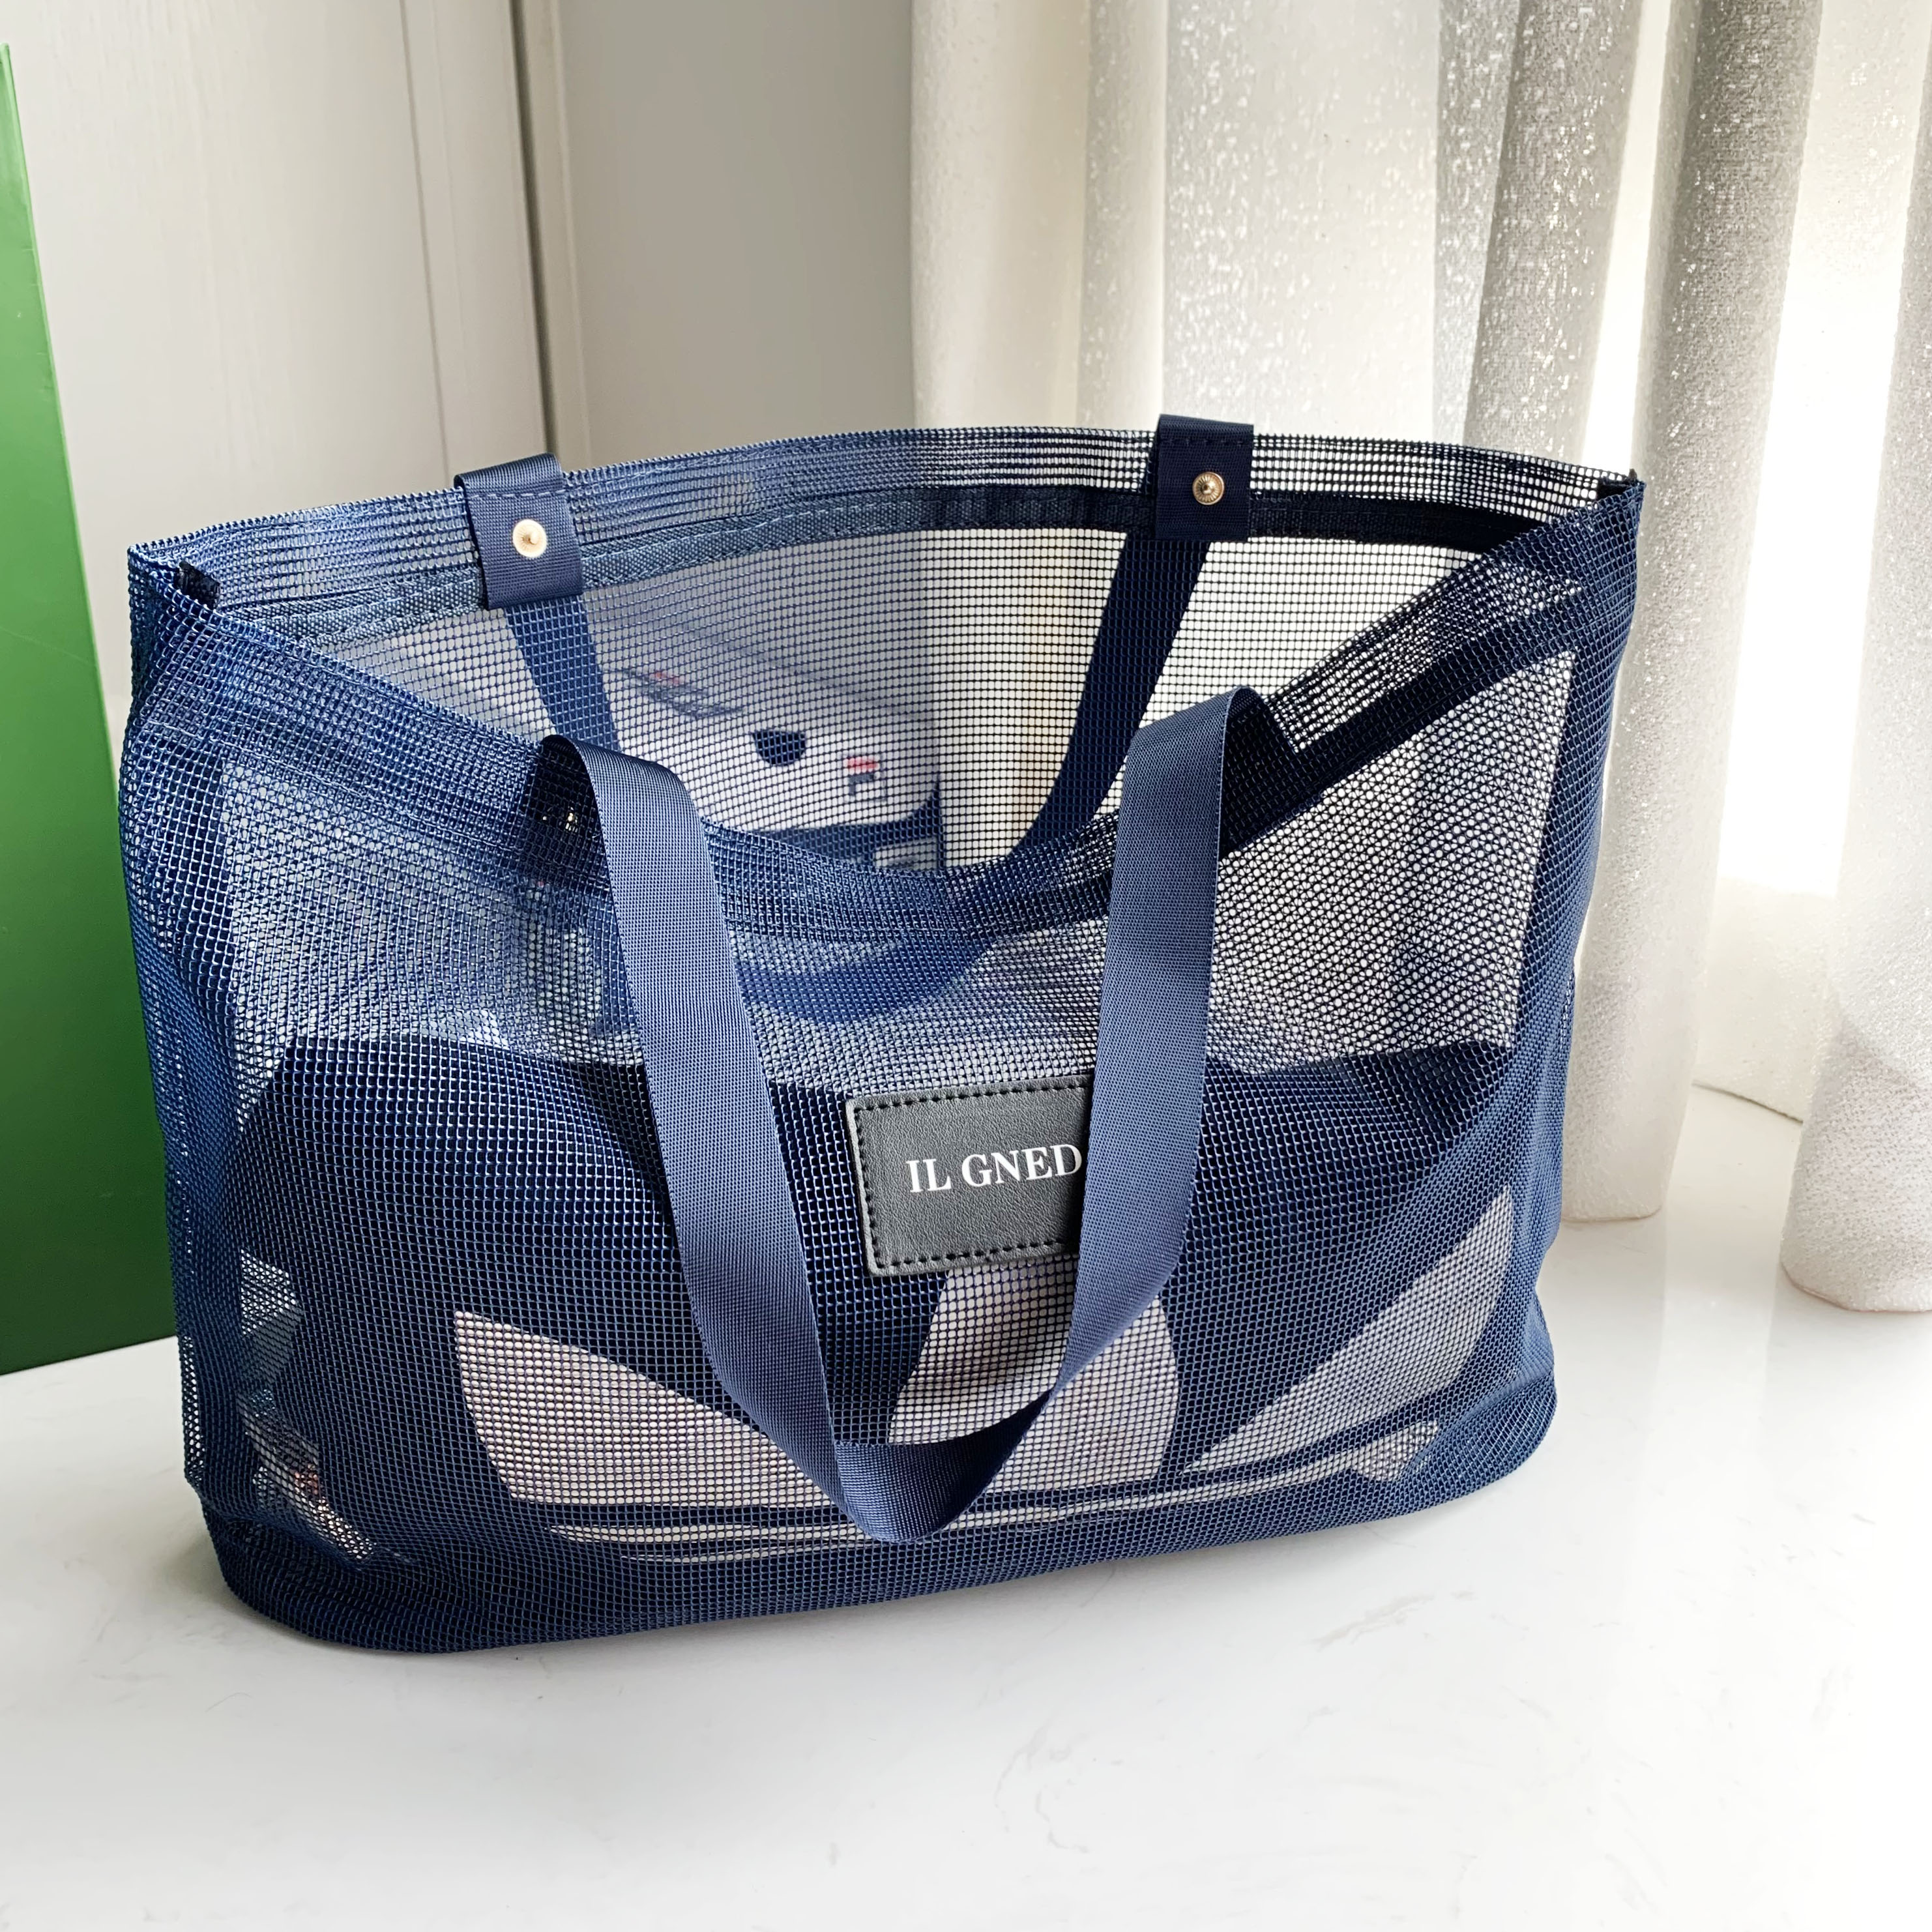 ILGNED托特包网纱大容量手提包ins透明大包购物袋旅行 轻奢收纳包